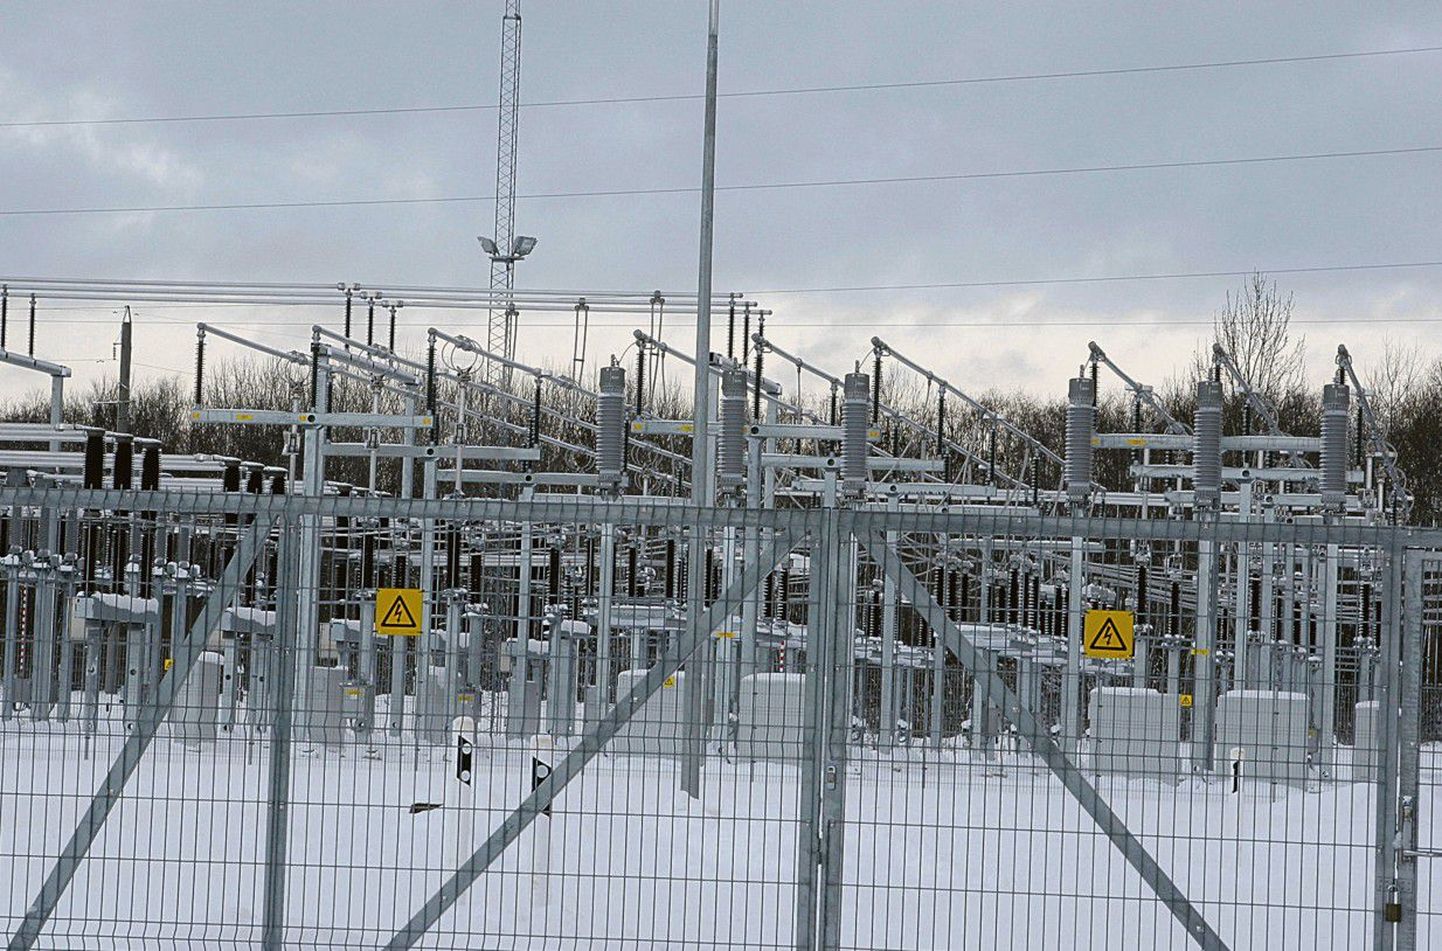 В период с 2011 до 2014 год Jaotusvõrk, являющееся дочерним предприятием Eesti Energia, намеревается инвестировать в модернизацию электросети триста миллионов евро, чтобы добиться заметного снижения числа сбоев в электроснабжении.